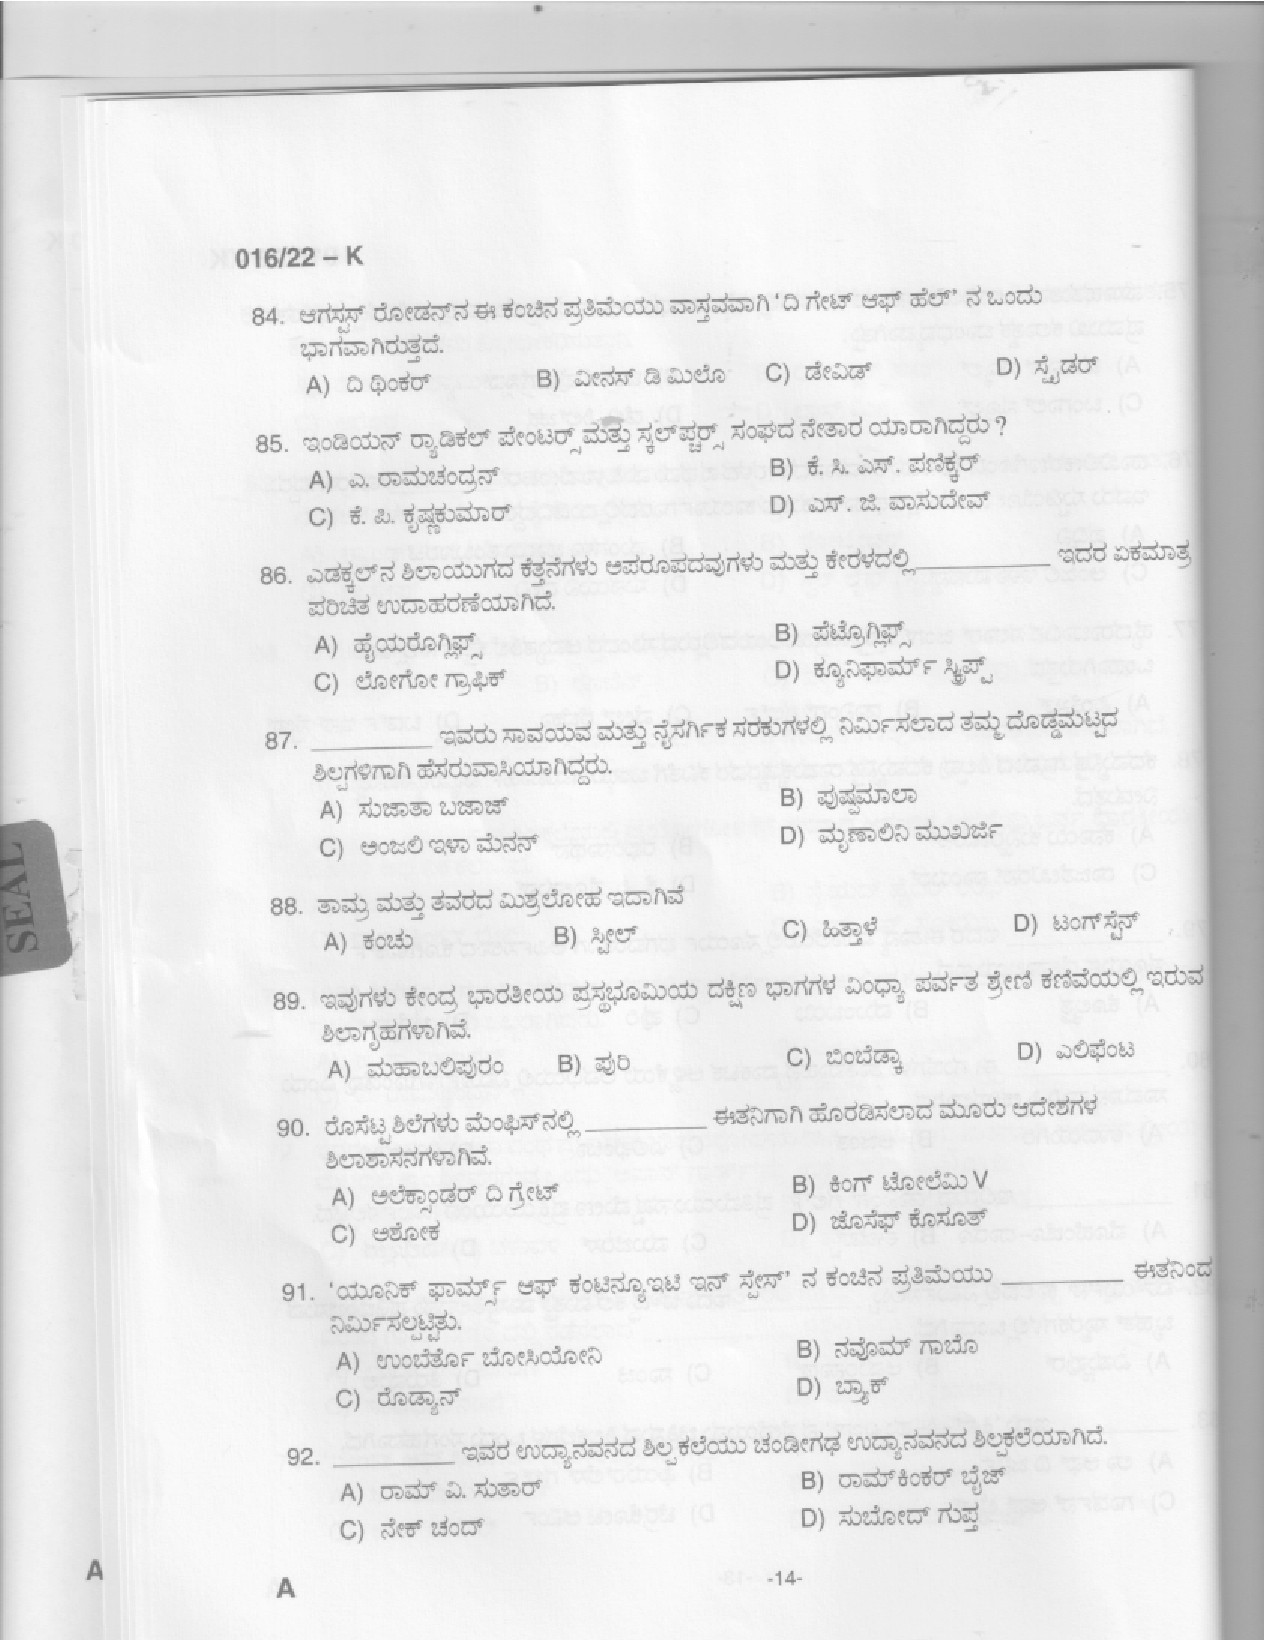 KPSC Drawing Teacher High School Kannada Exam 2022 Code 0162022 12